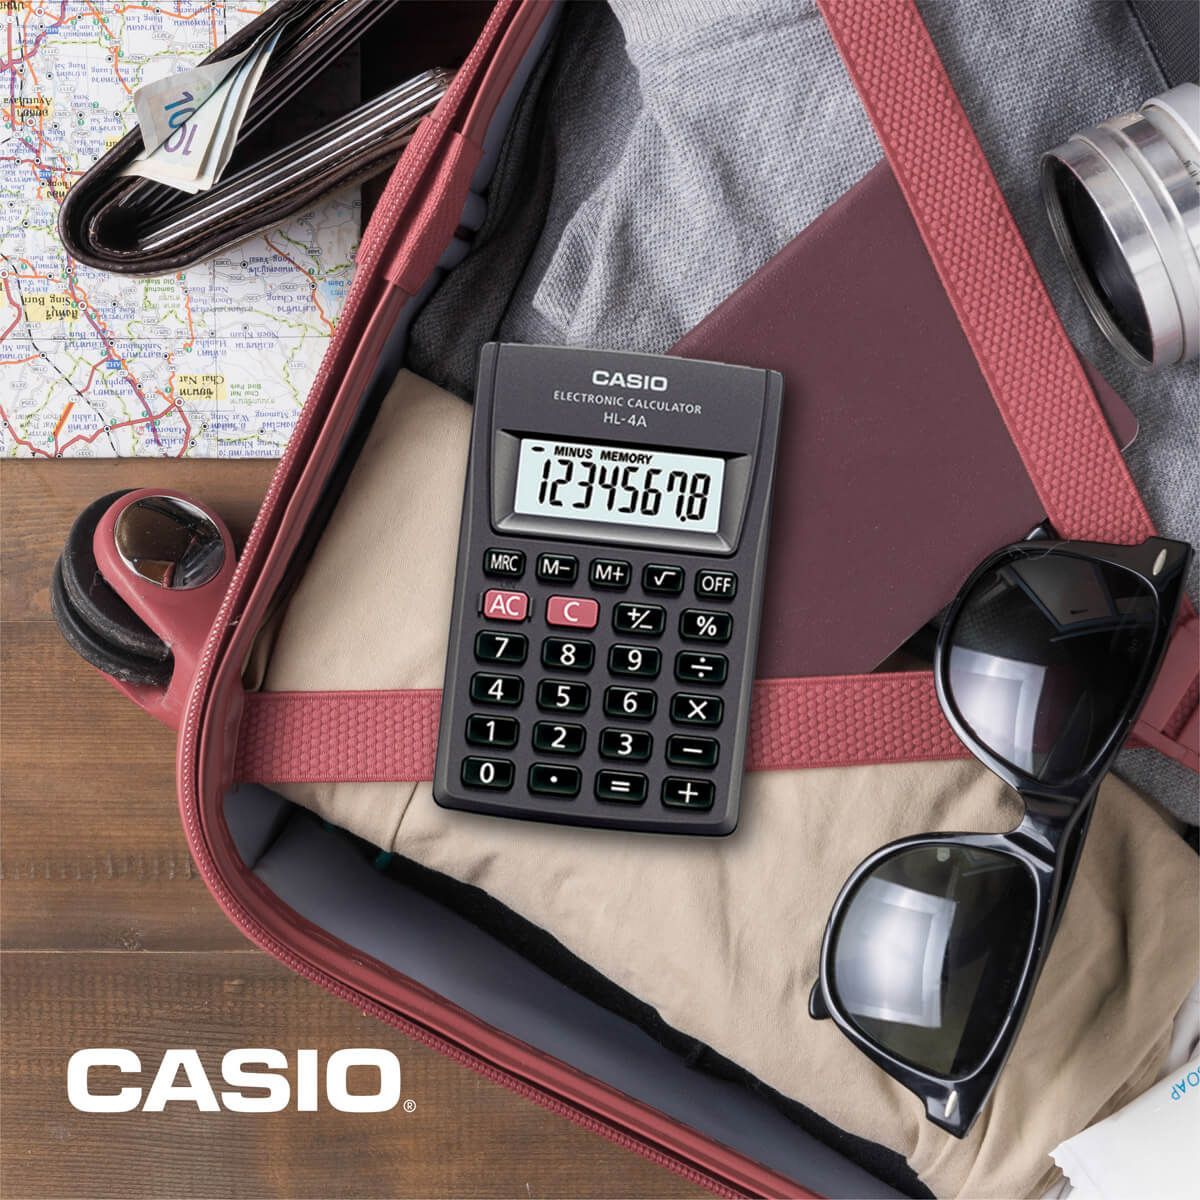 Mini Calculadora Casio Hl-4a 8 Dígitos Portátil Bolsillo